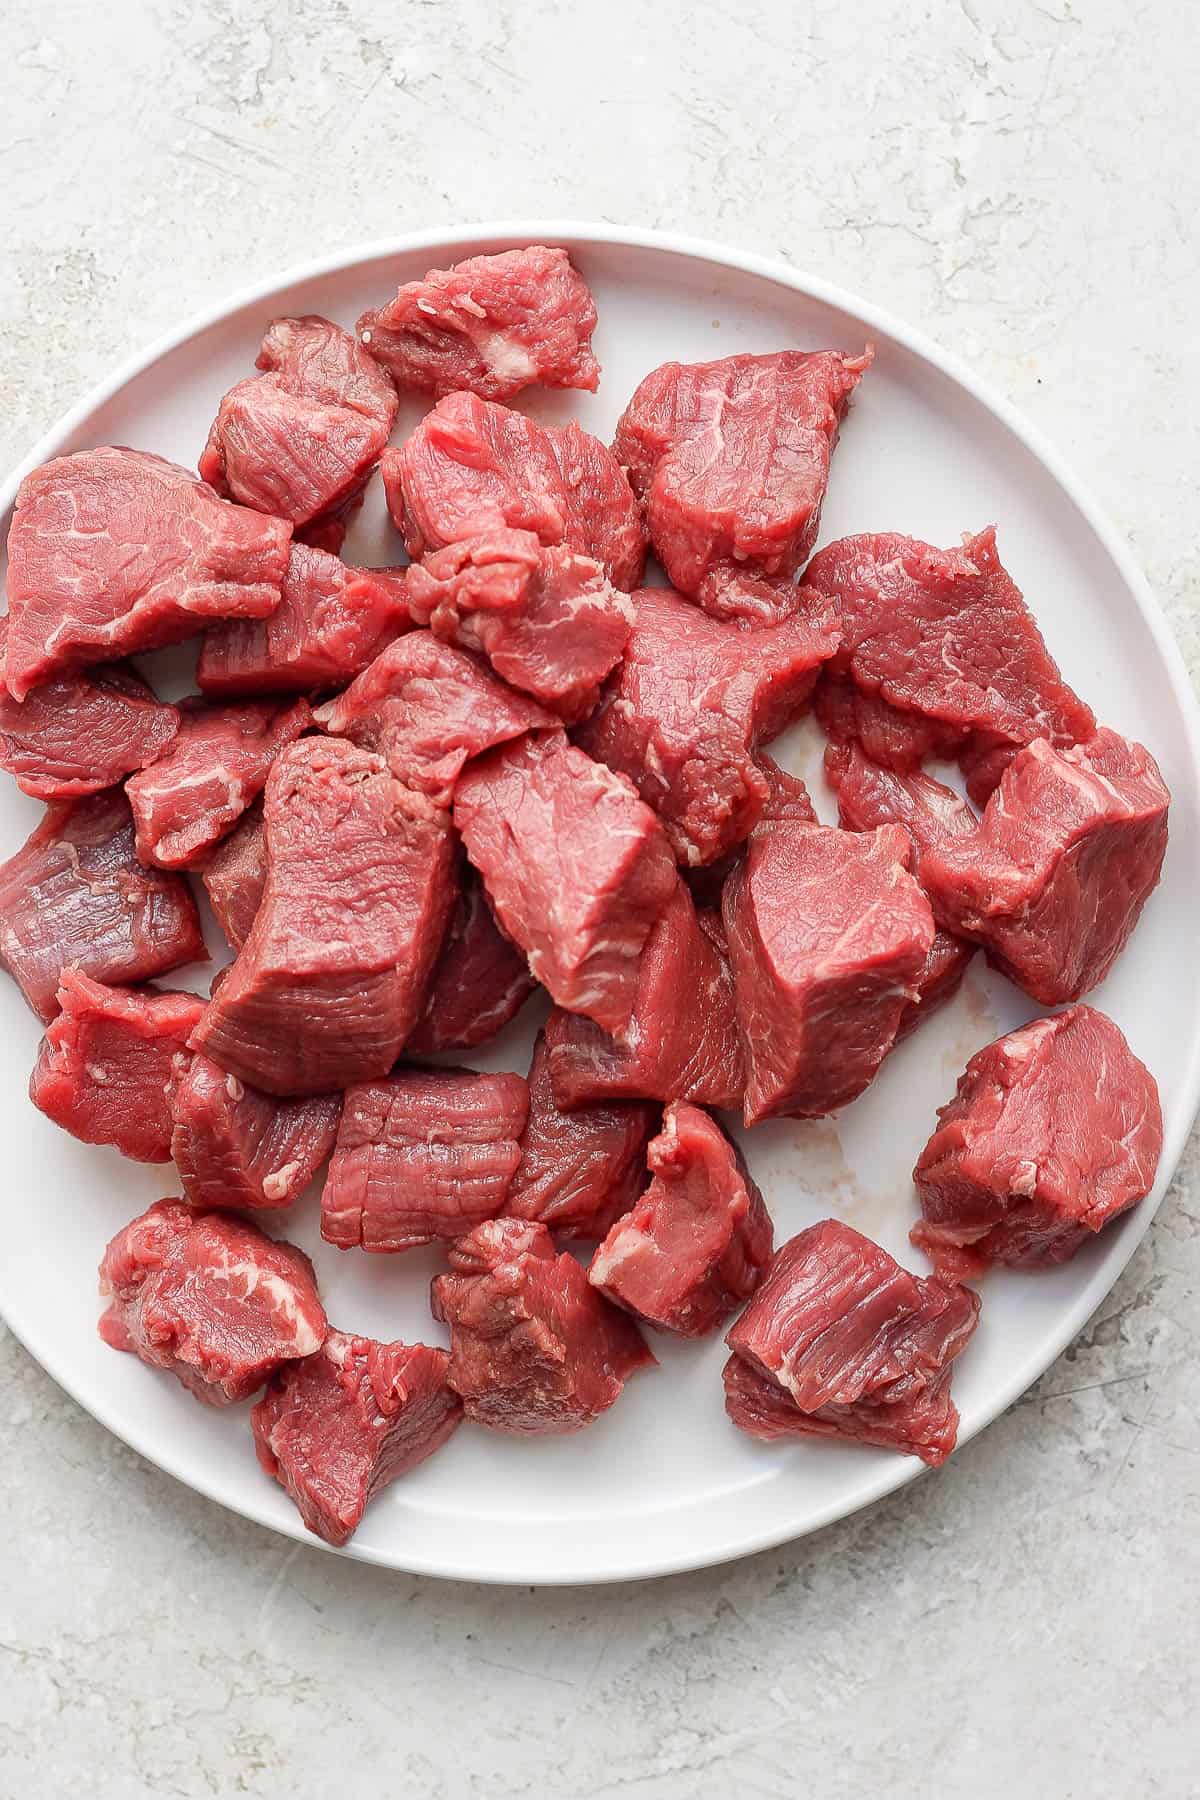 Cut-up beef tenderloin steak tips on a plate.